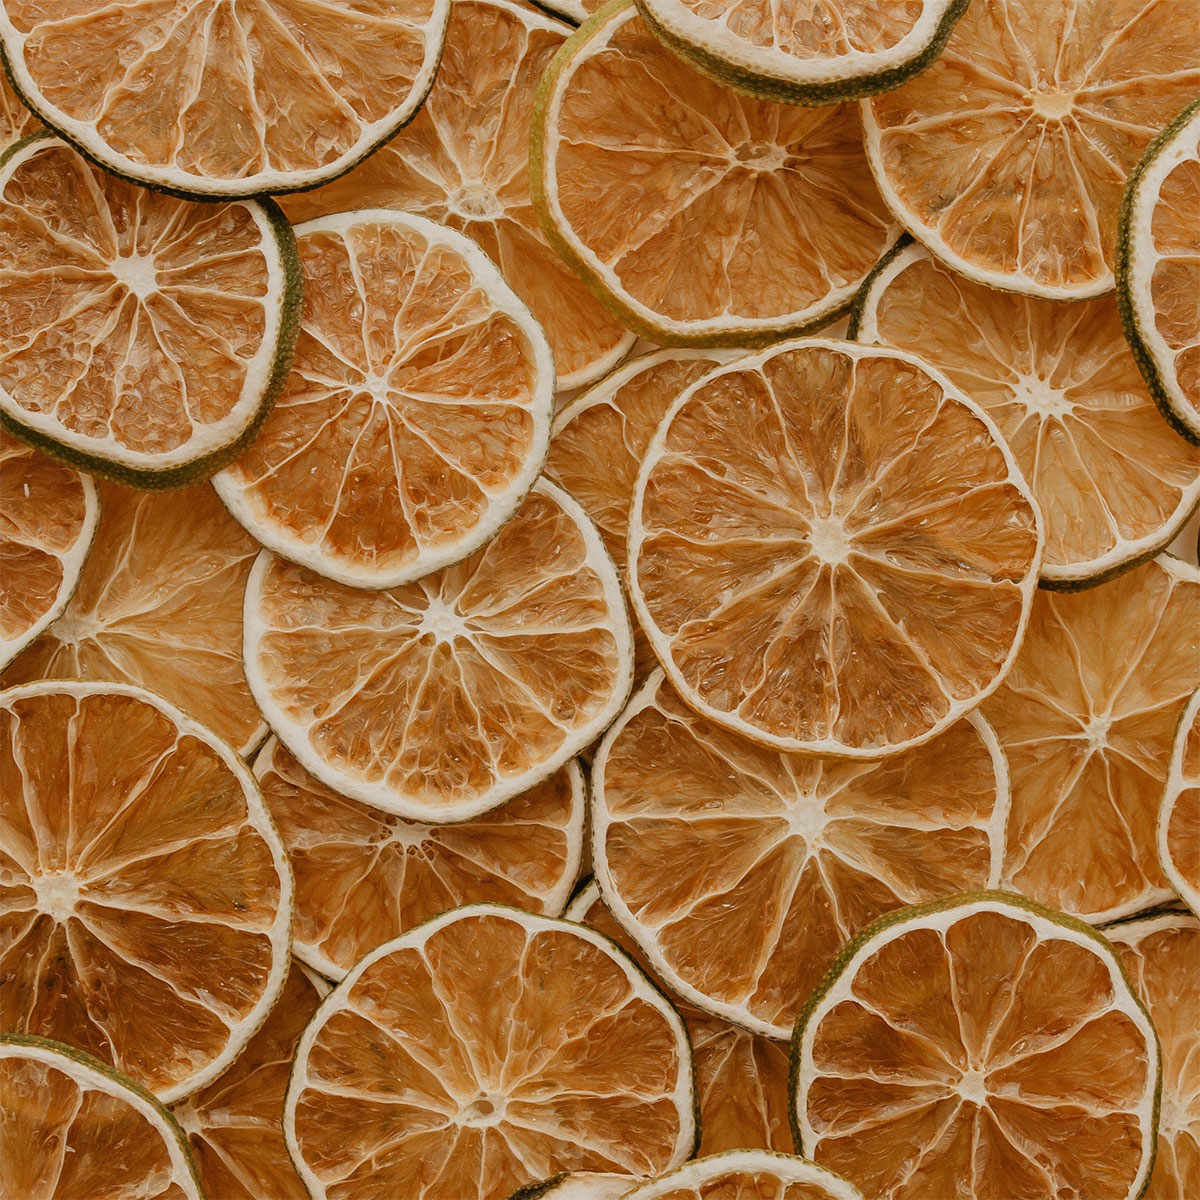 Botanica tørret frugt – Lime